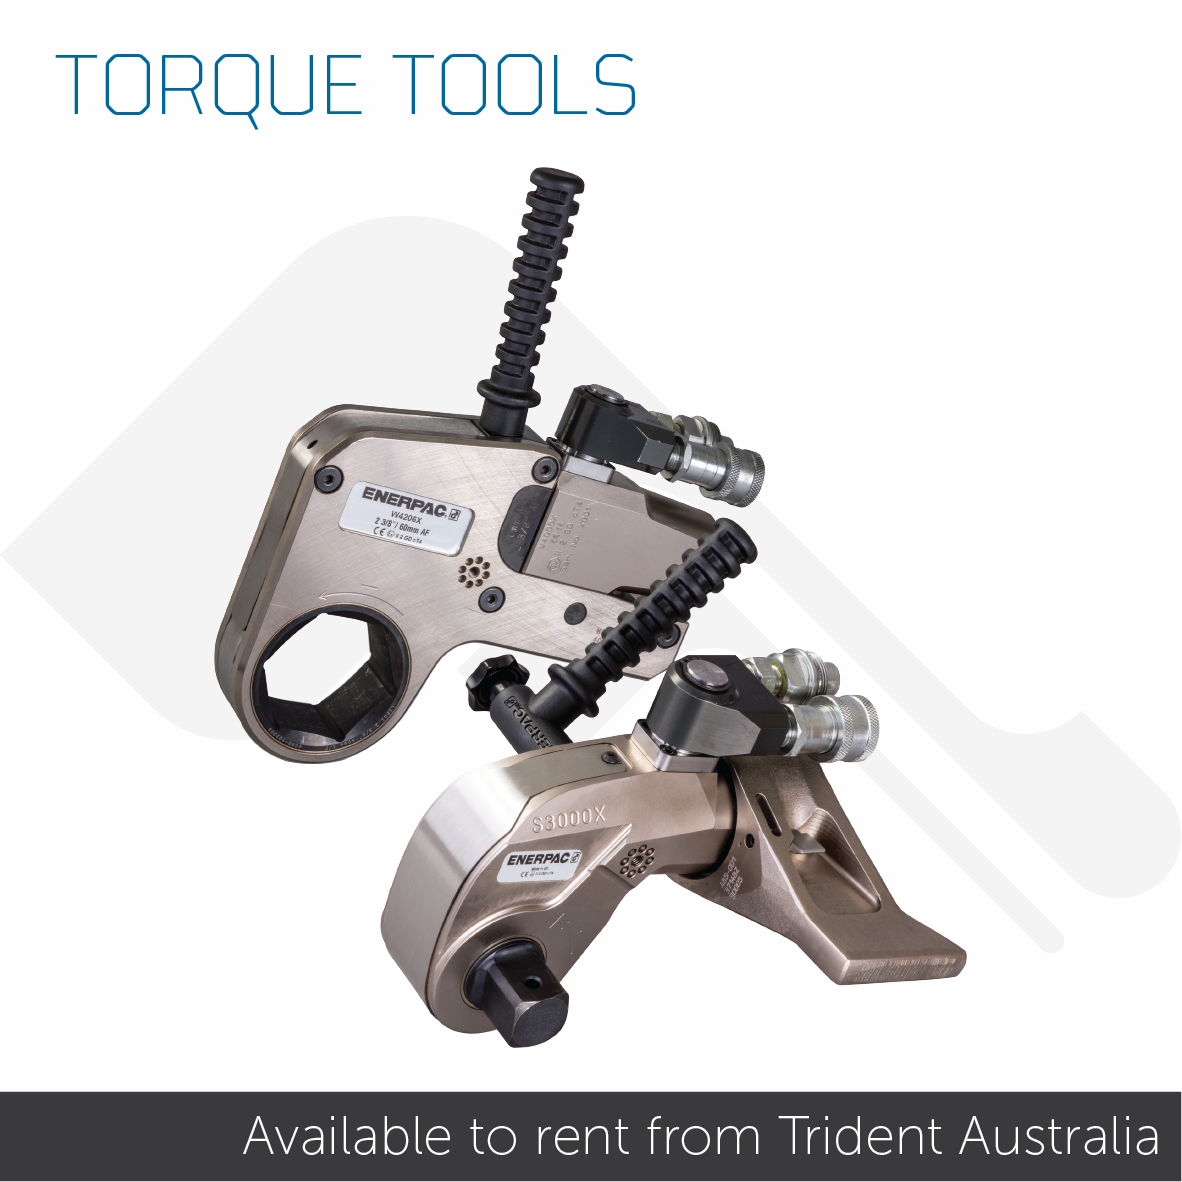 Trident Australia Rental Torque Tools